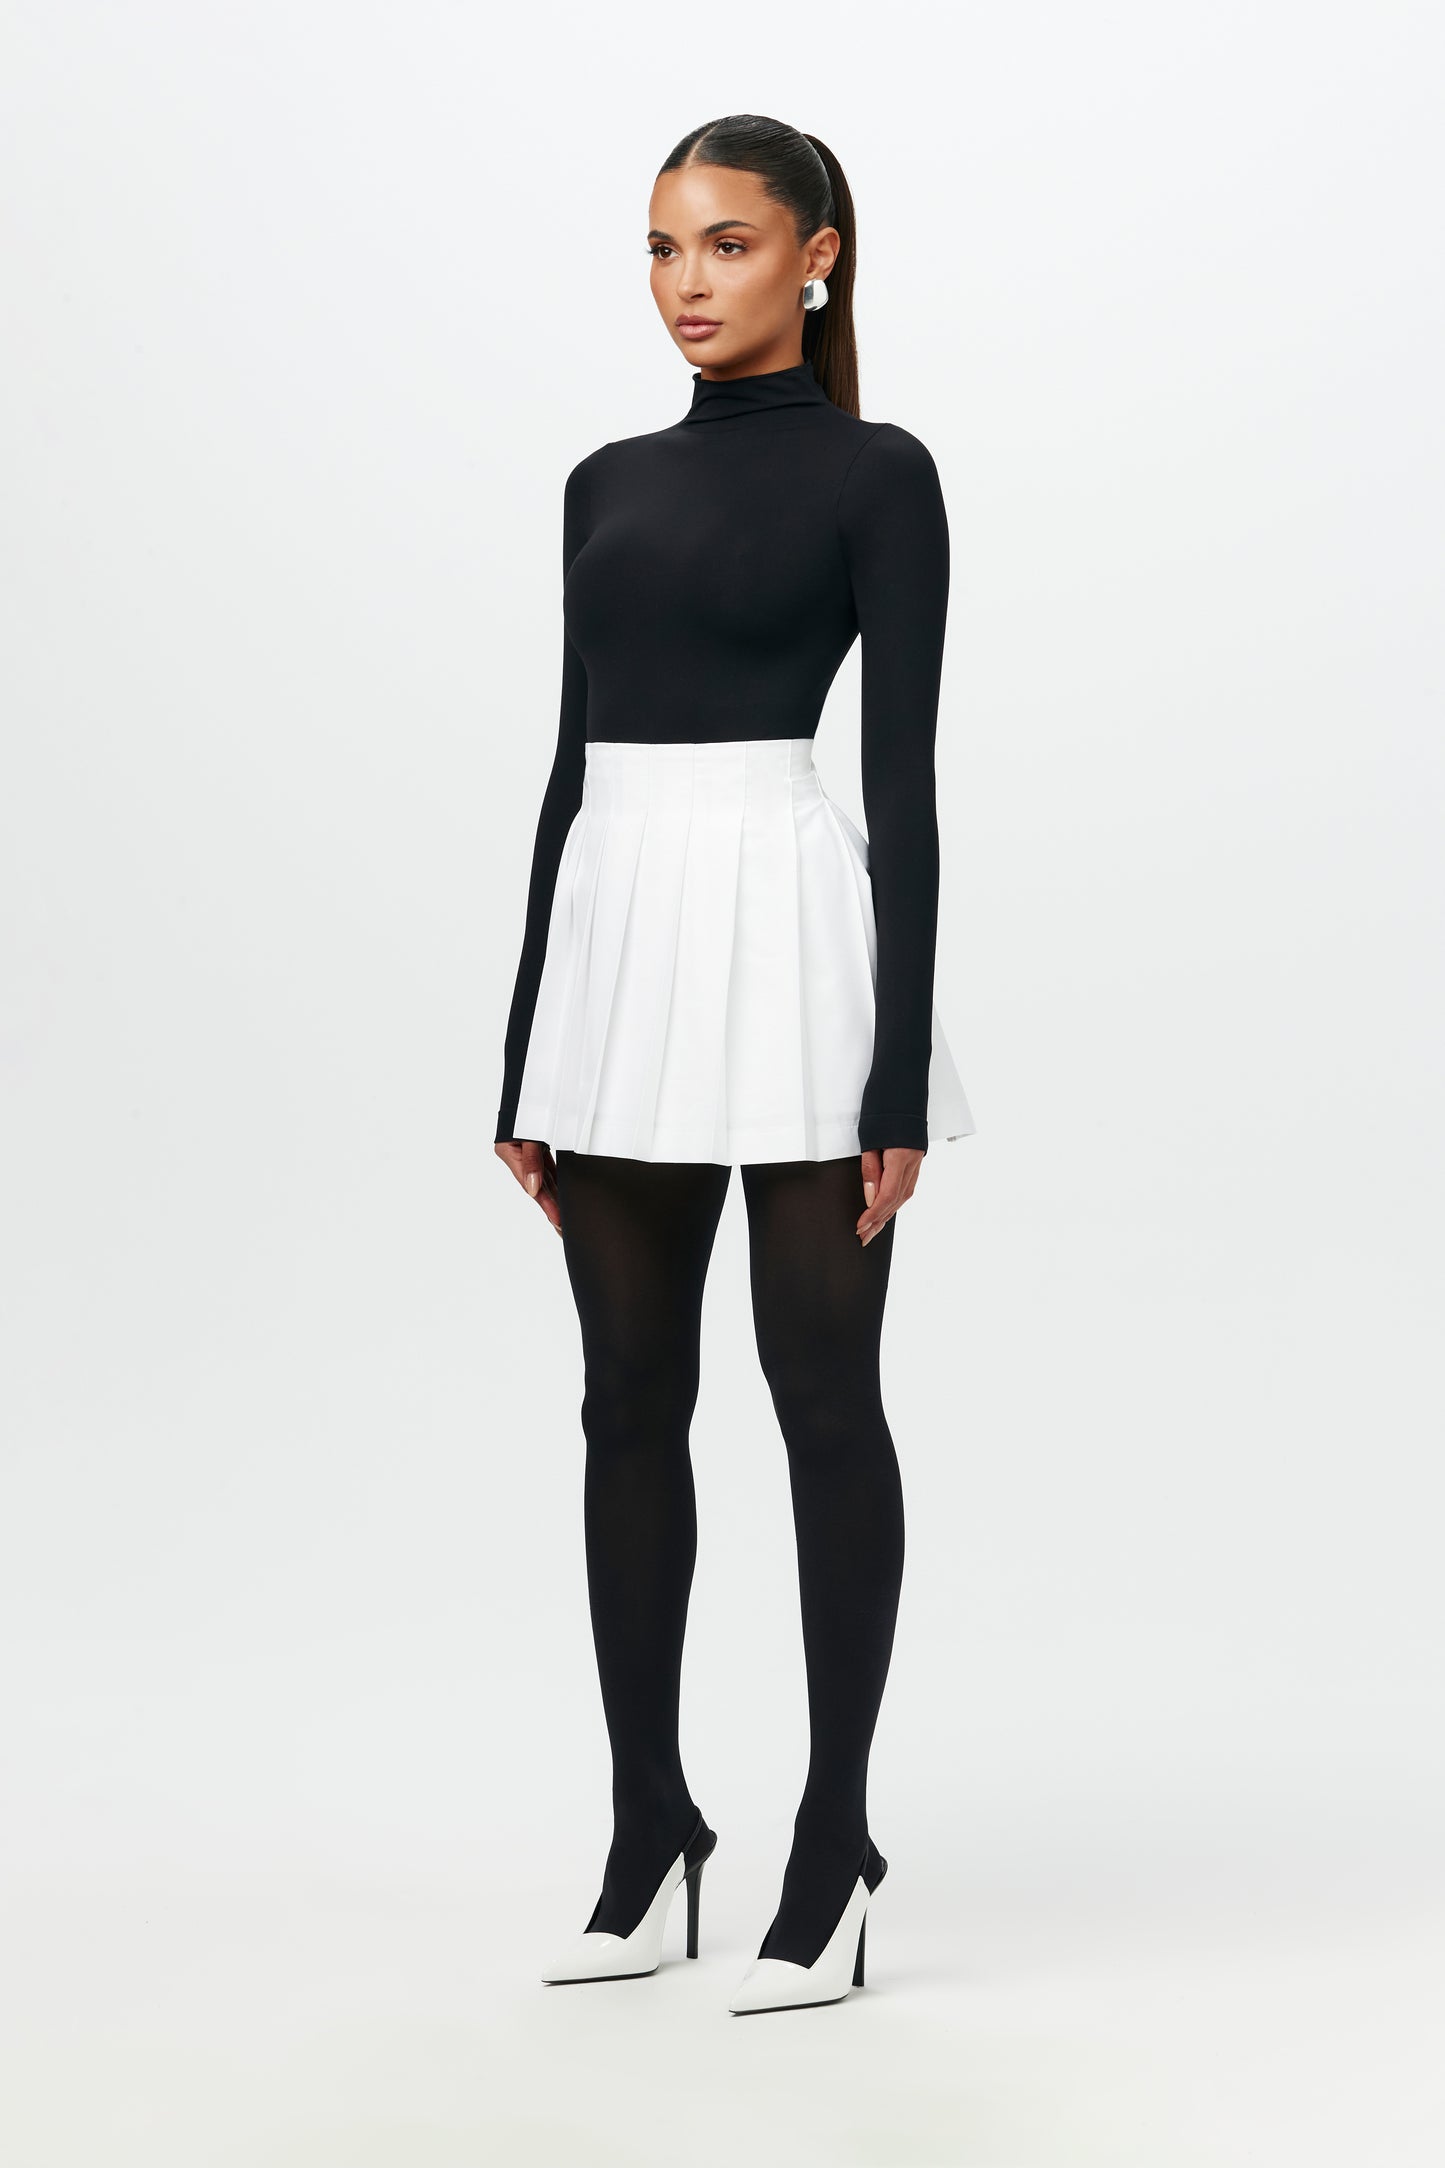 Shirting Pleated Mini Skirt